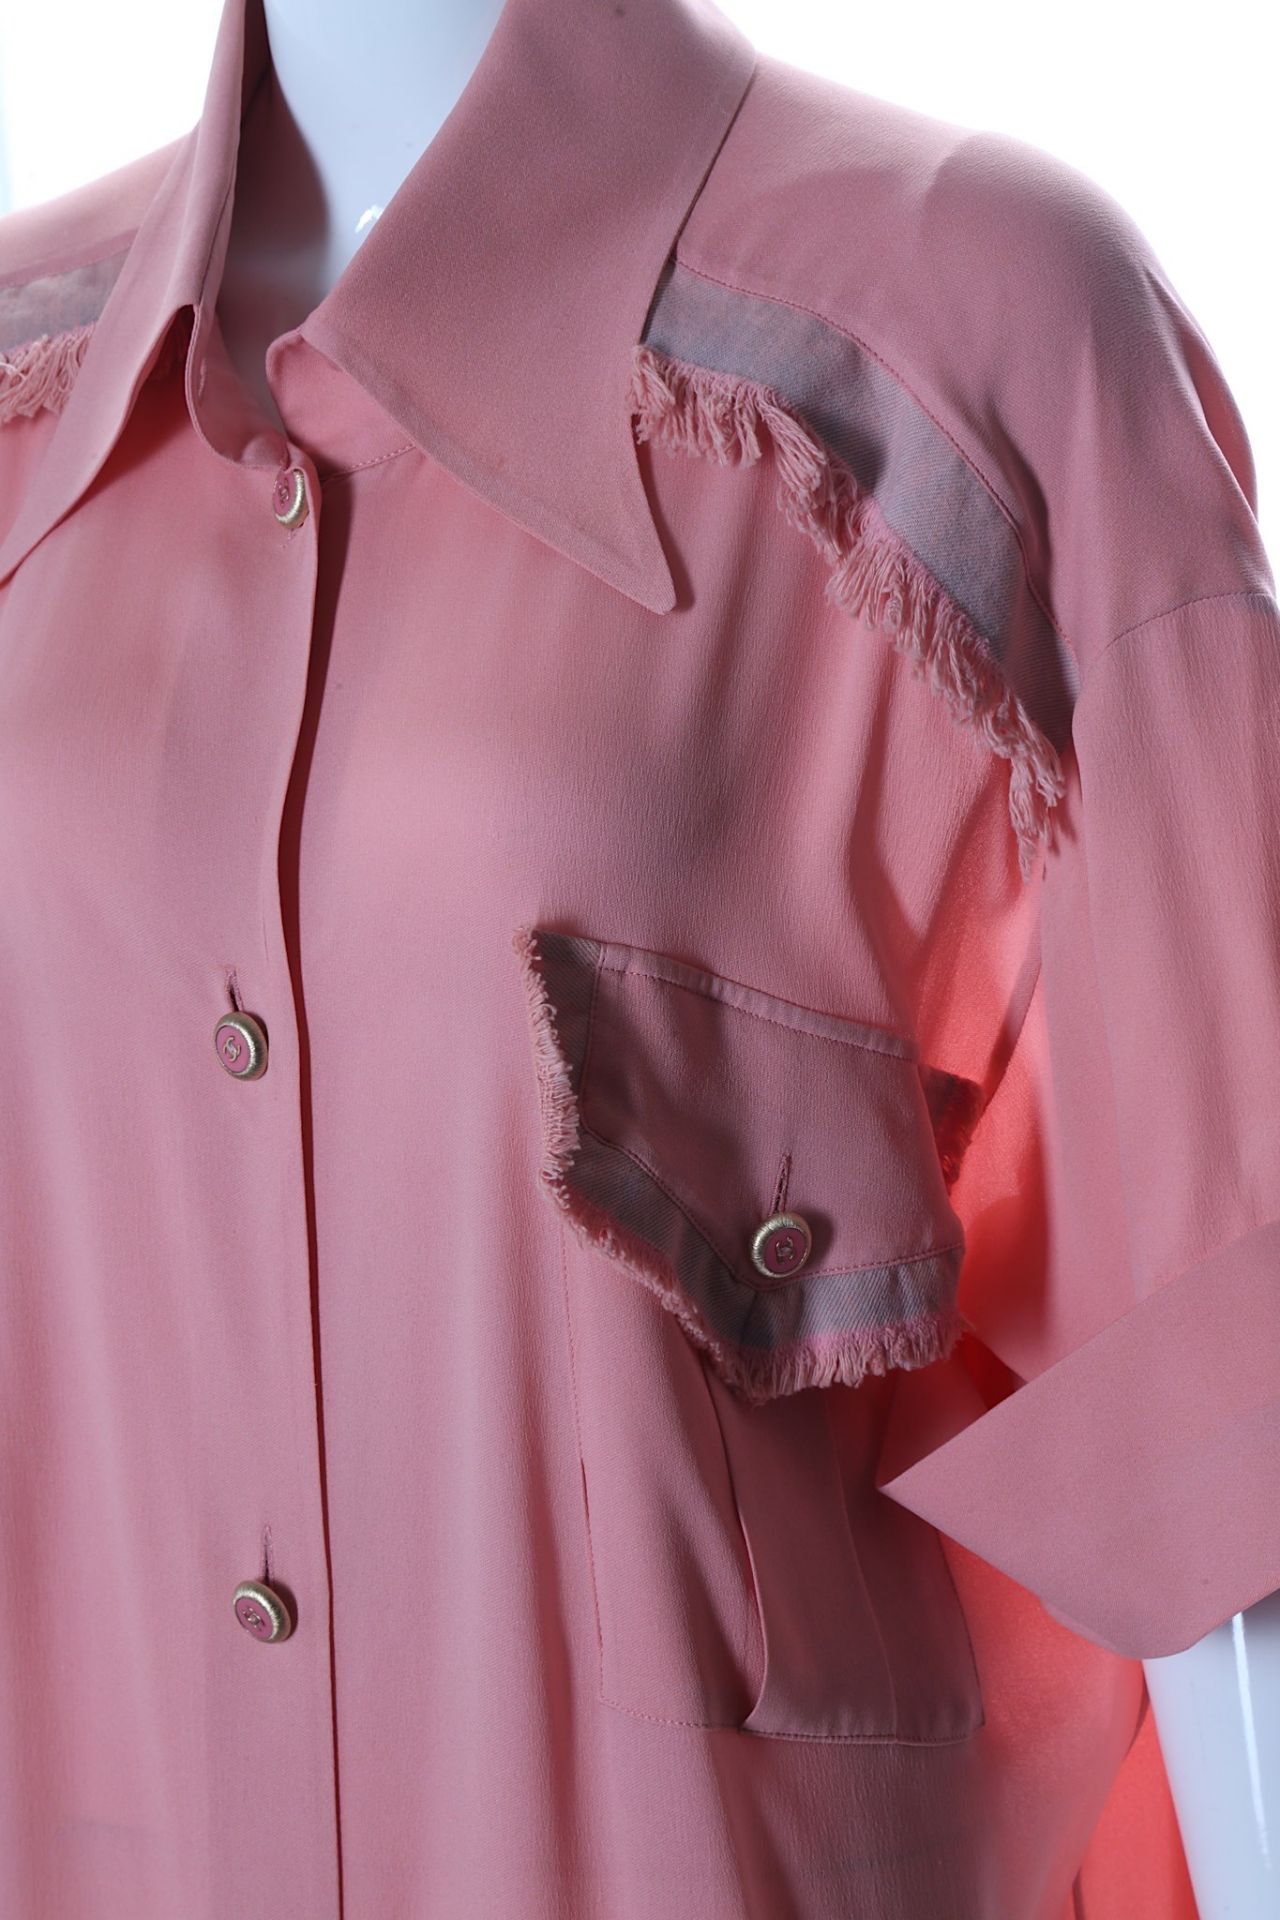 Chanel Pink Georgette Crepe Silk Shirt Dress, Summ - Bild 2 aus 5